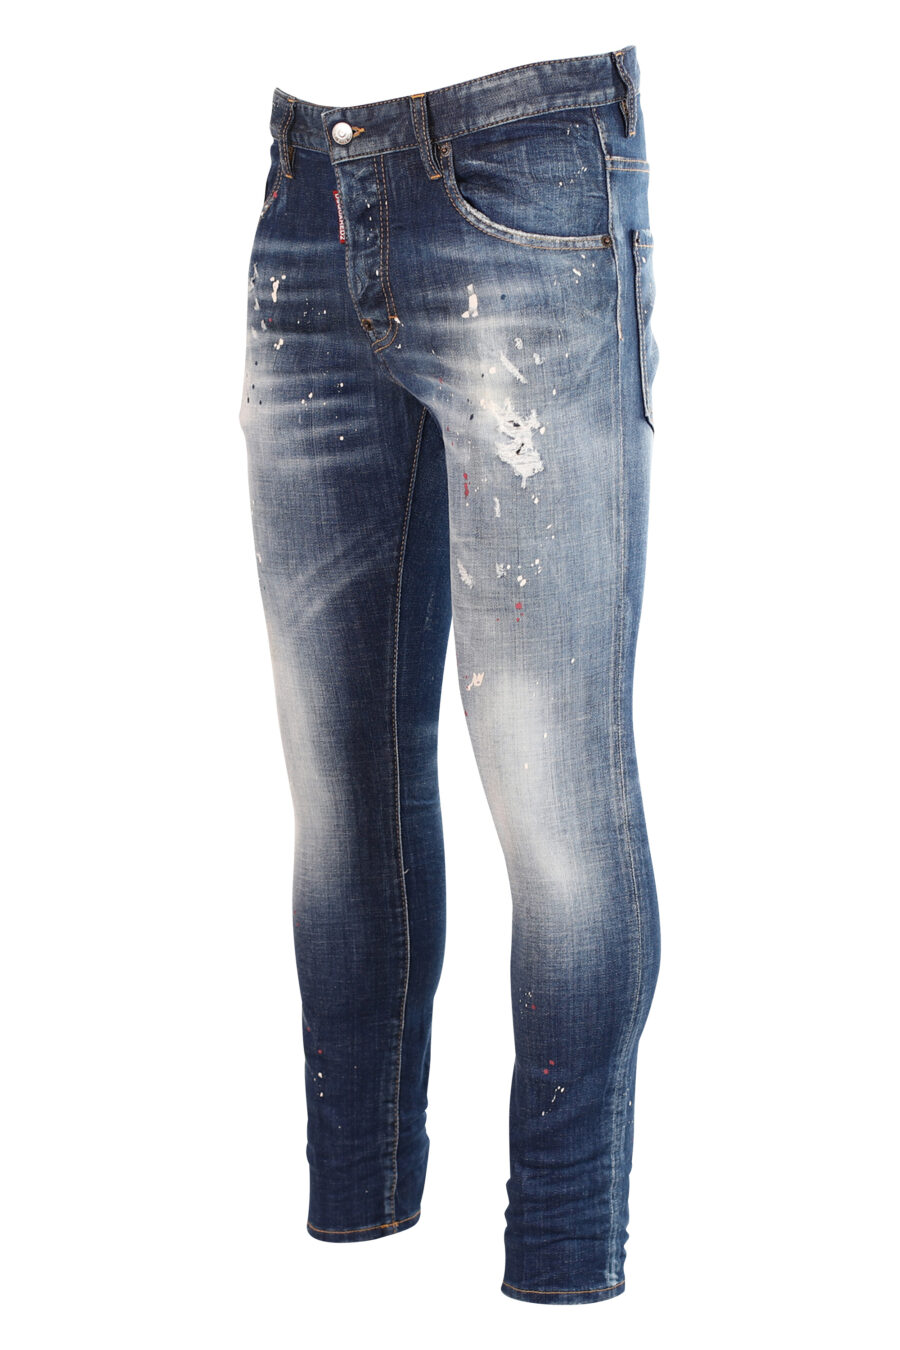 Semi-getragene blaue "Skater"-Jeans mit Farbe und Rissen - 8052134940020 2